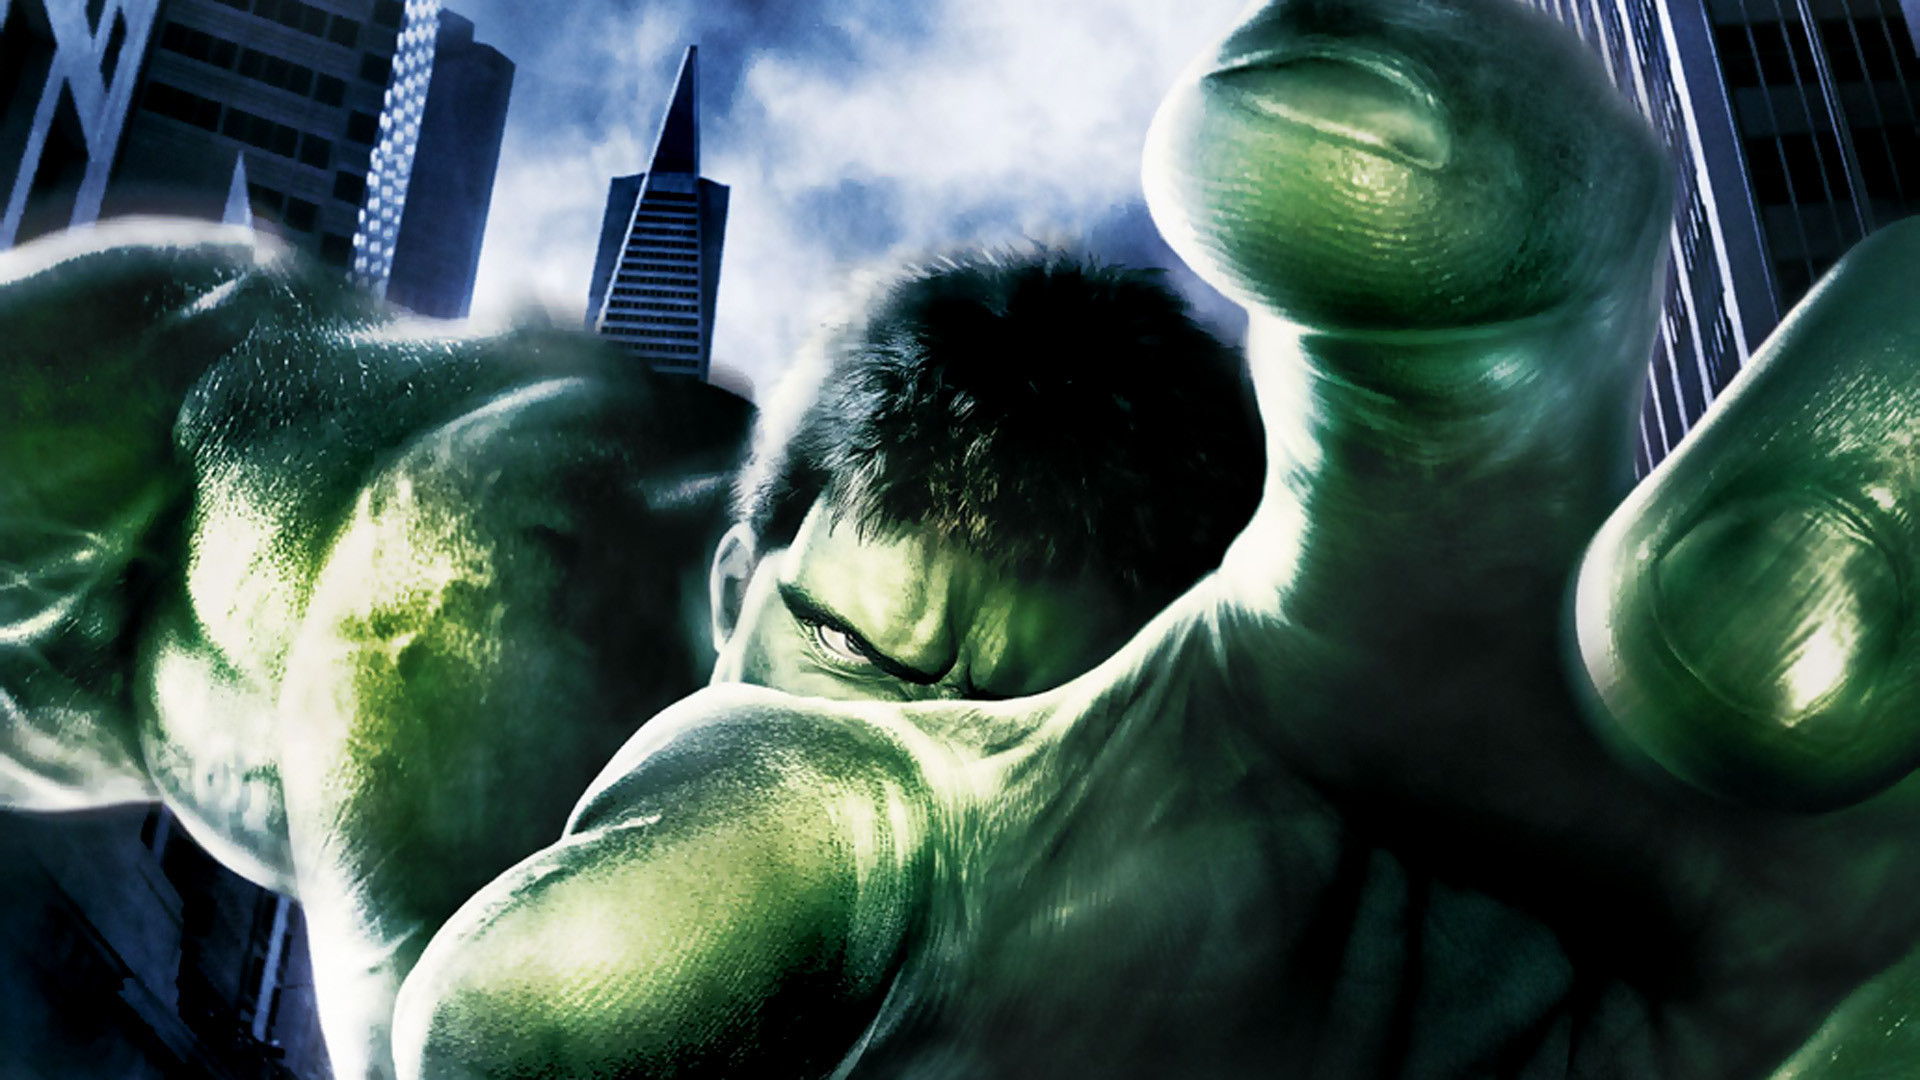 Hulk Movie Wallpapers Hulk Movie Wallpapers | HD Wallpapers